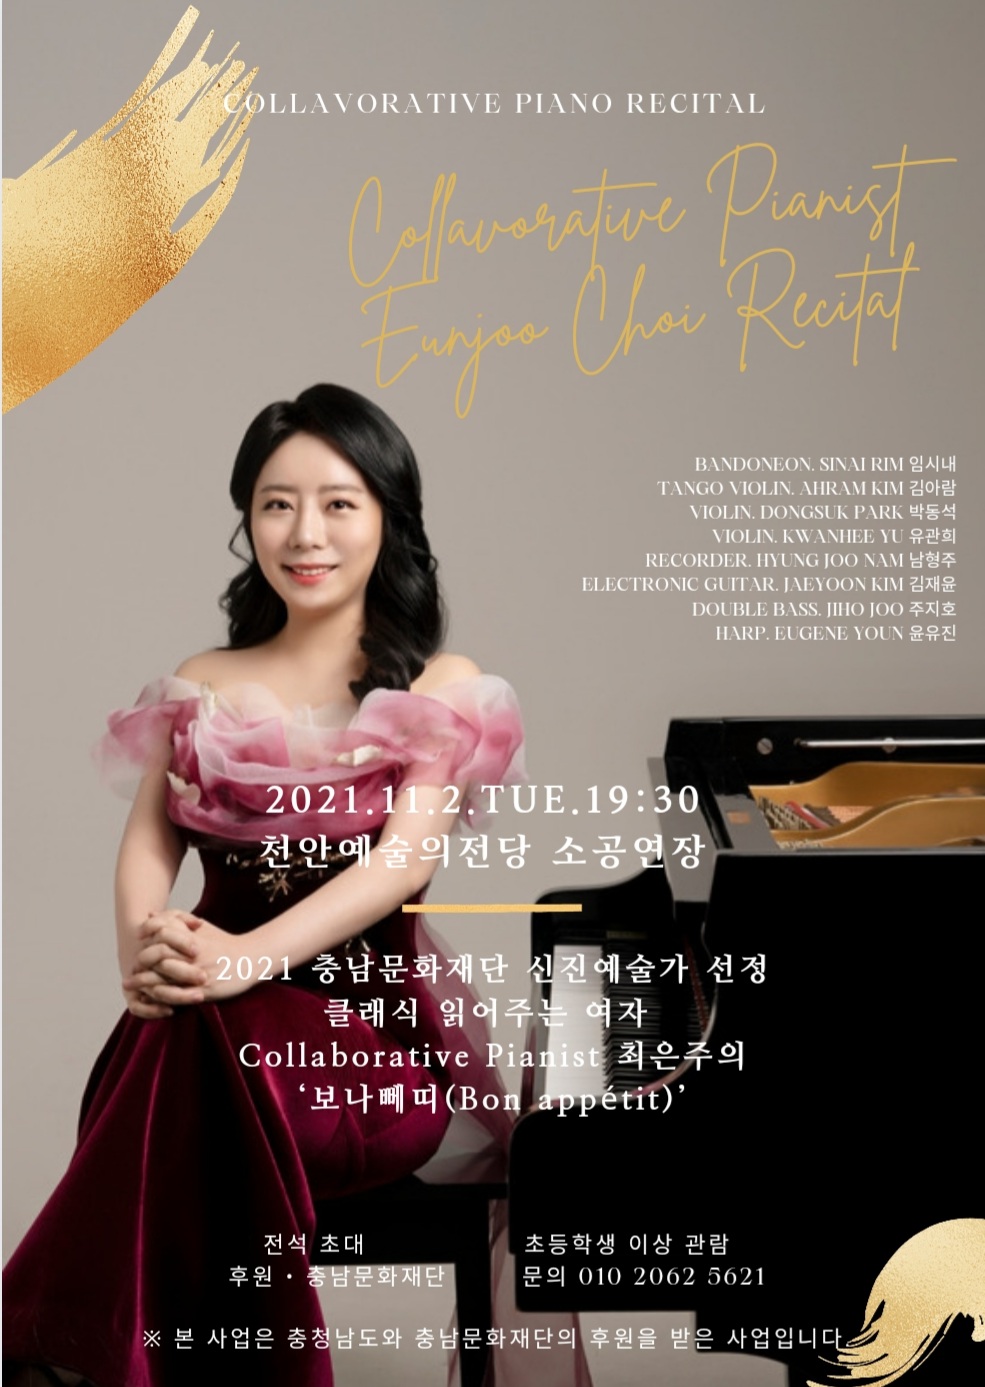 [홍보] 클래식 읽어주는 여자 Collaborative pianist ’보나빼띠’ 무료공연 초대